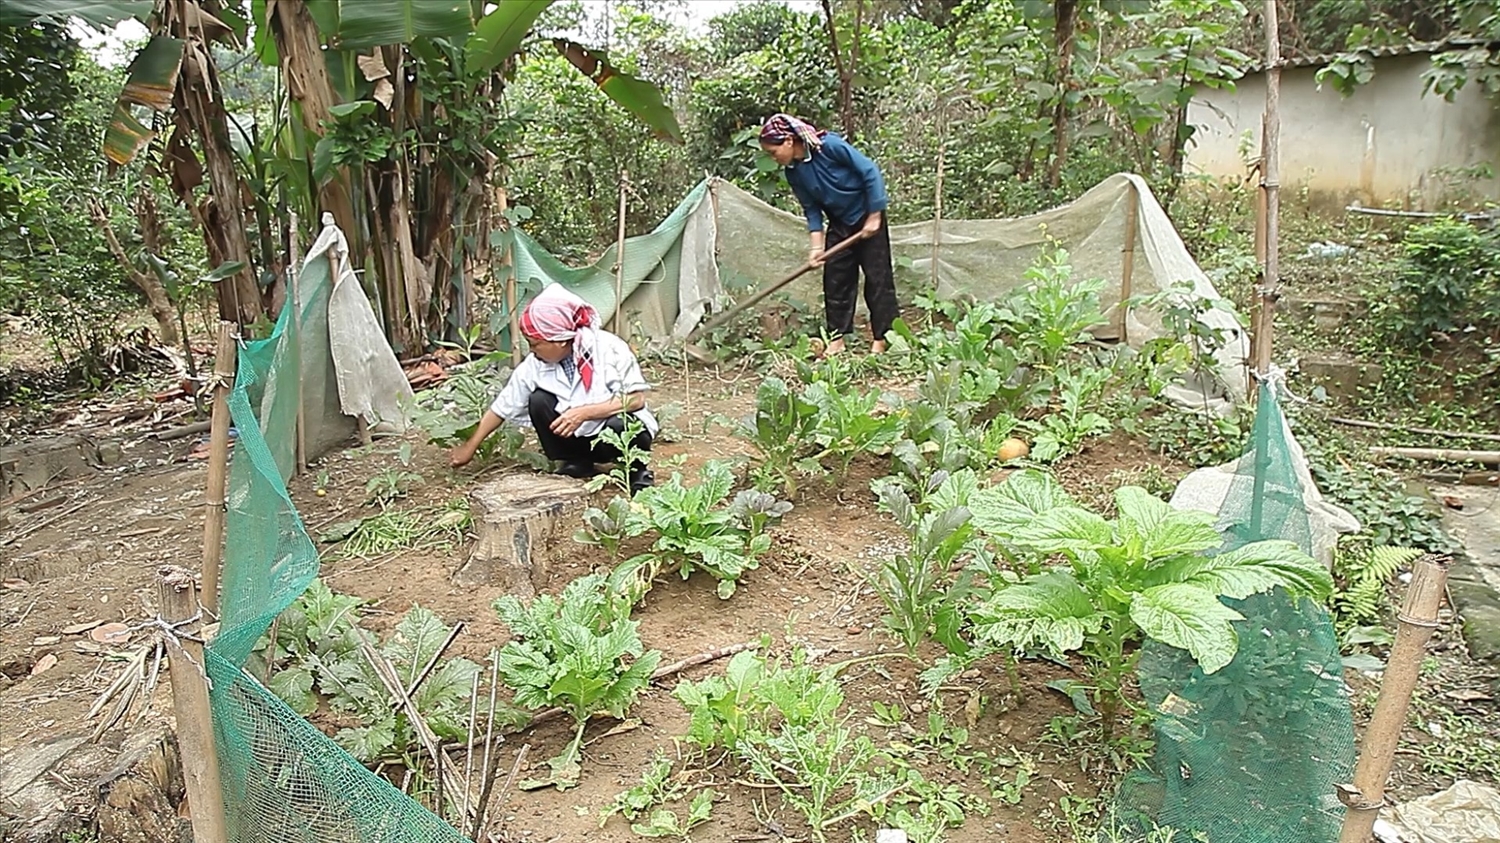 Để có thêm chút tiền sinh hoạt, những người bệnh tận dụng khu đất trống trong khu trọ trồng thêm luống rau, cây hành mang bán